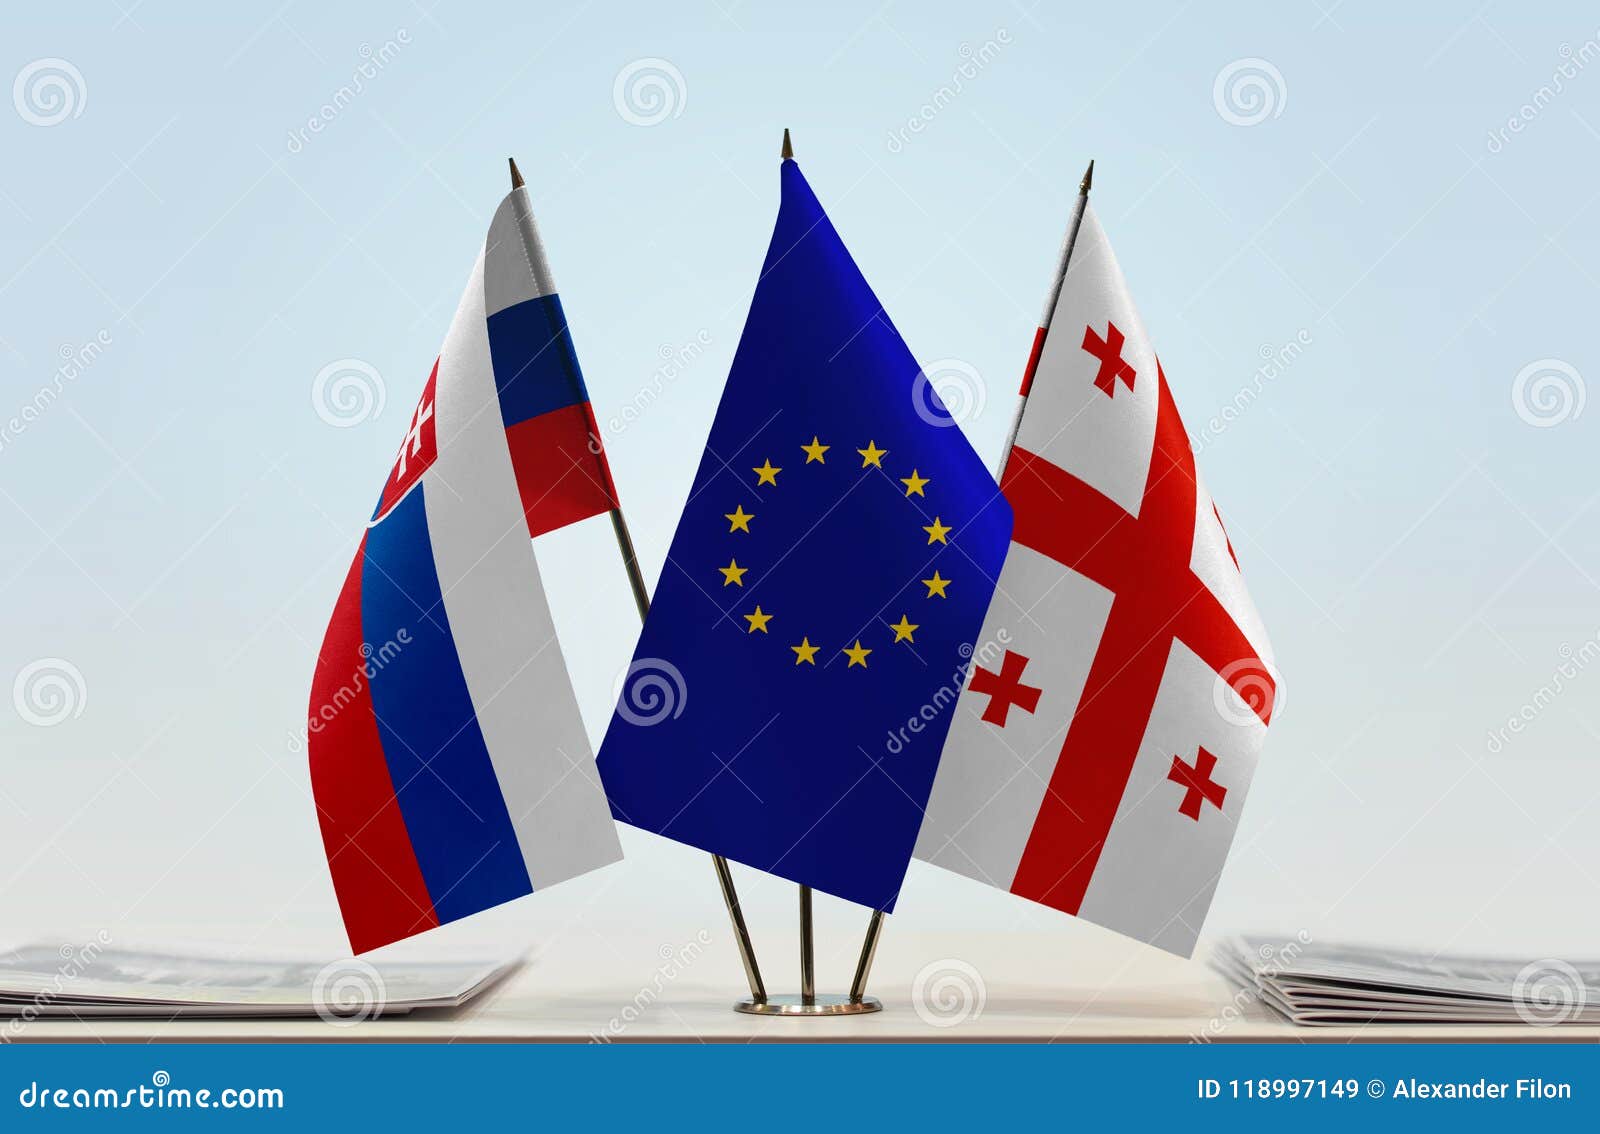 flags-of-slovakia-european-union-and-georgia-stock-image-image-of